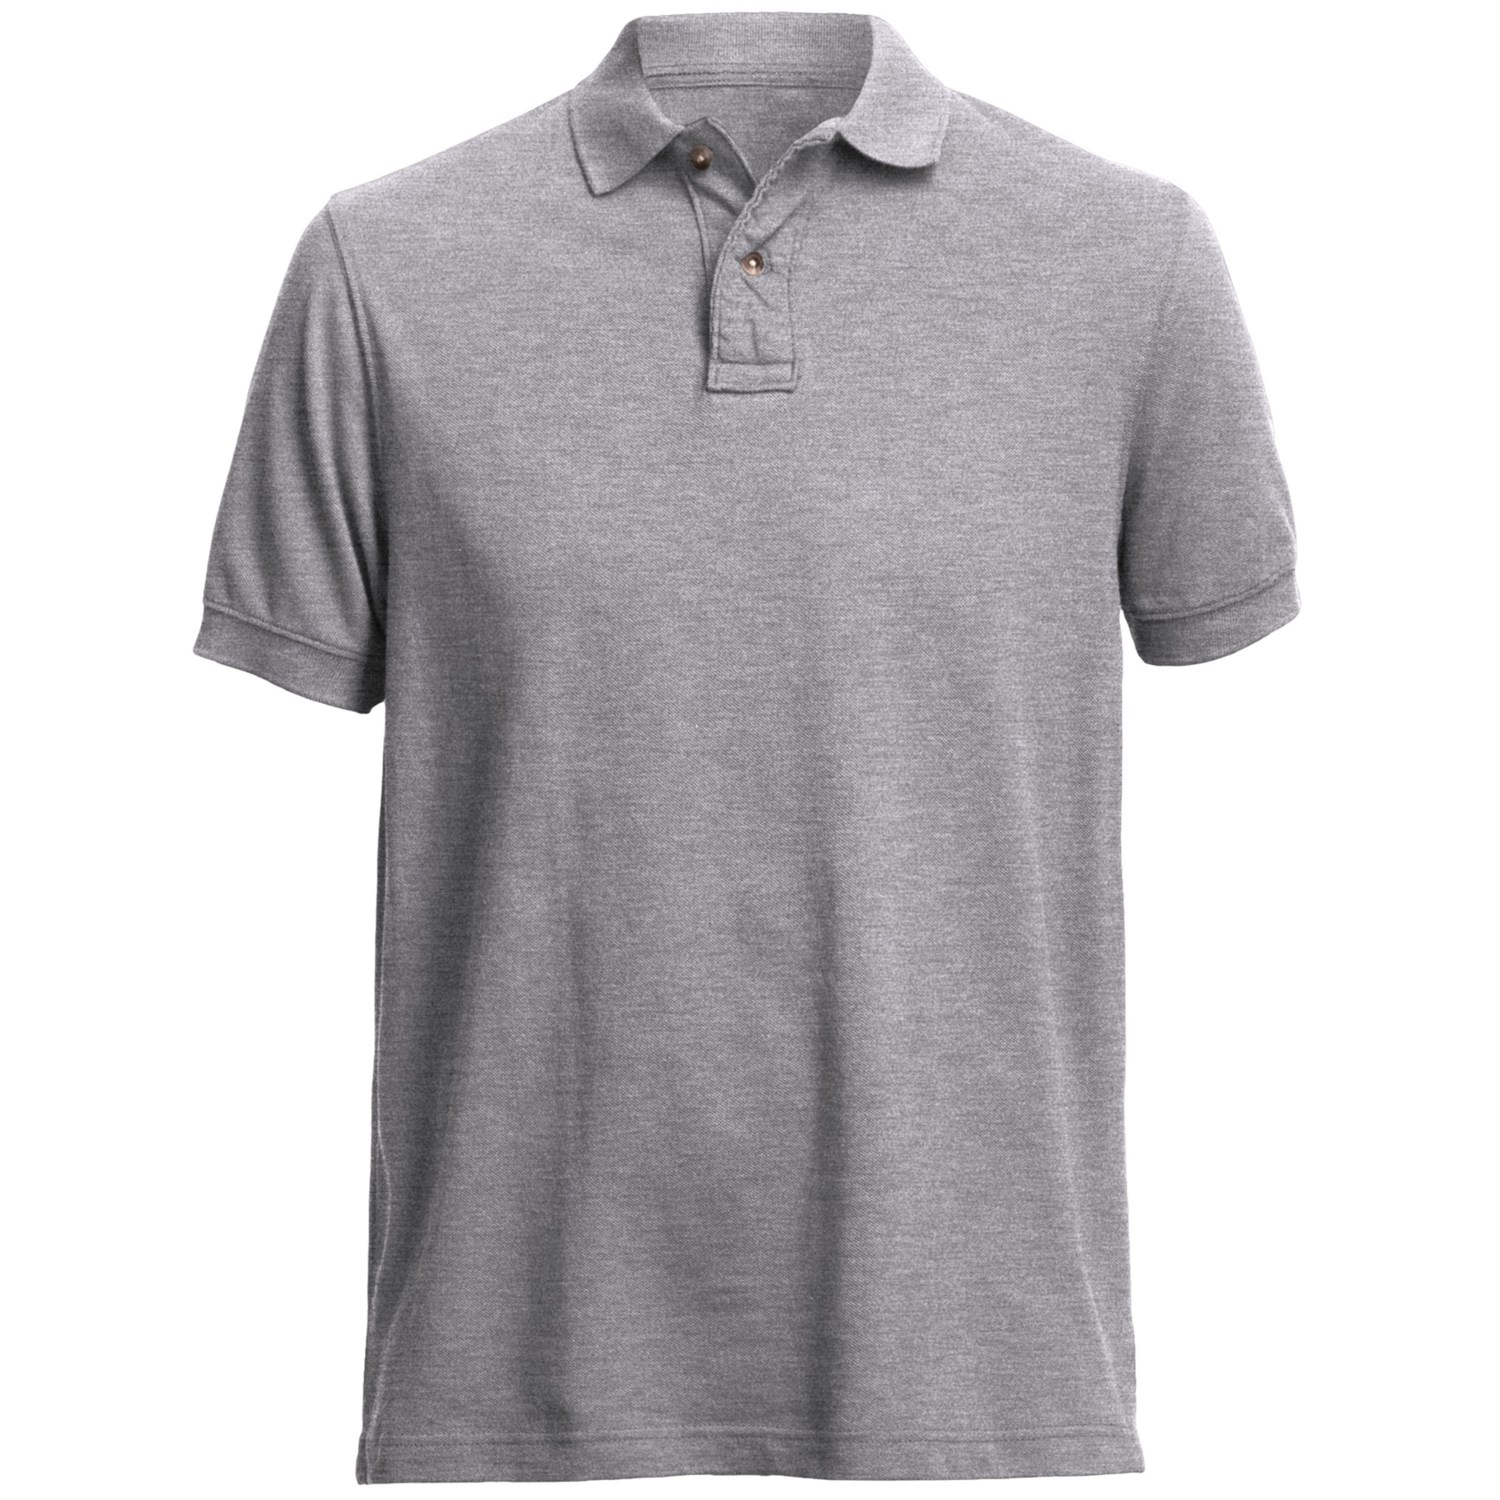 Pique Polo Shirt (For Men) - Save 79%